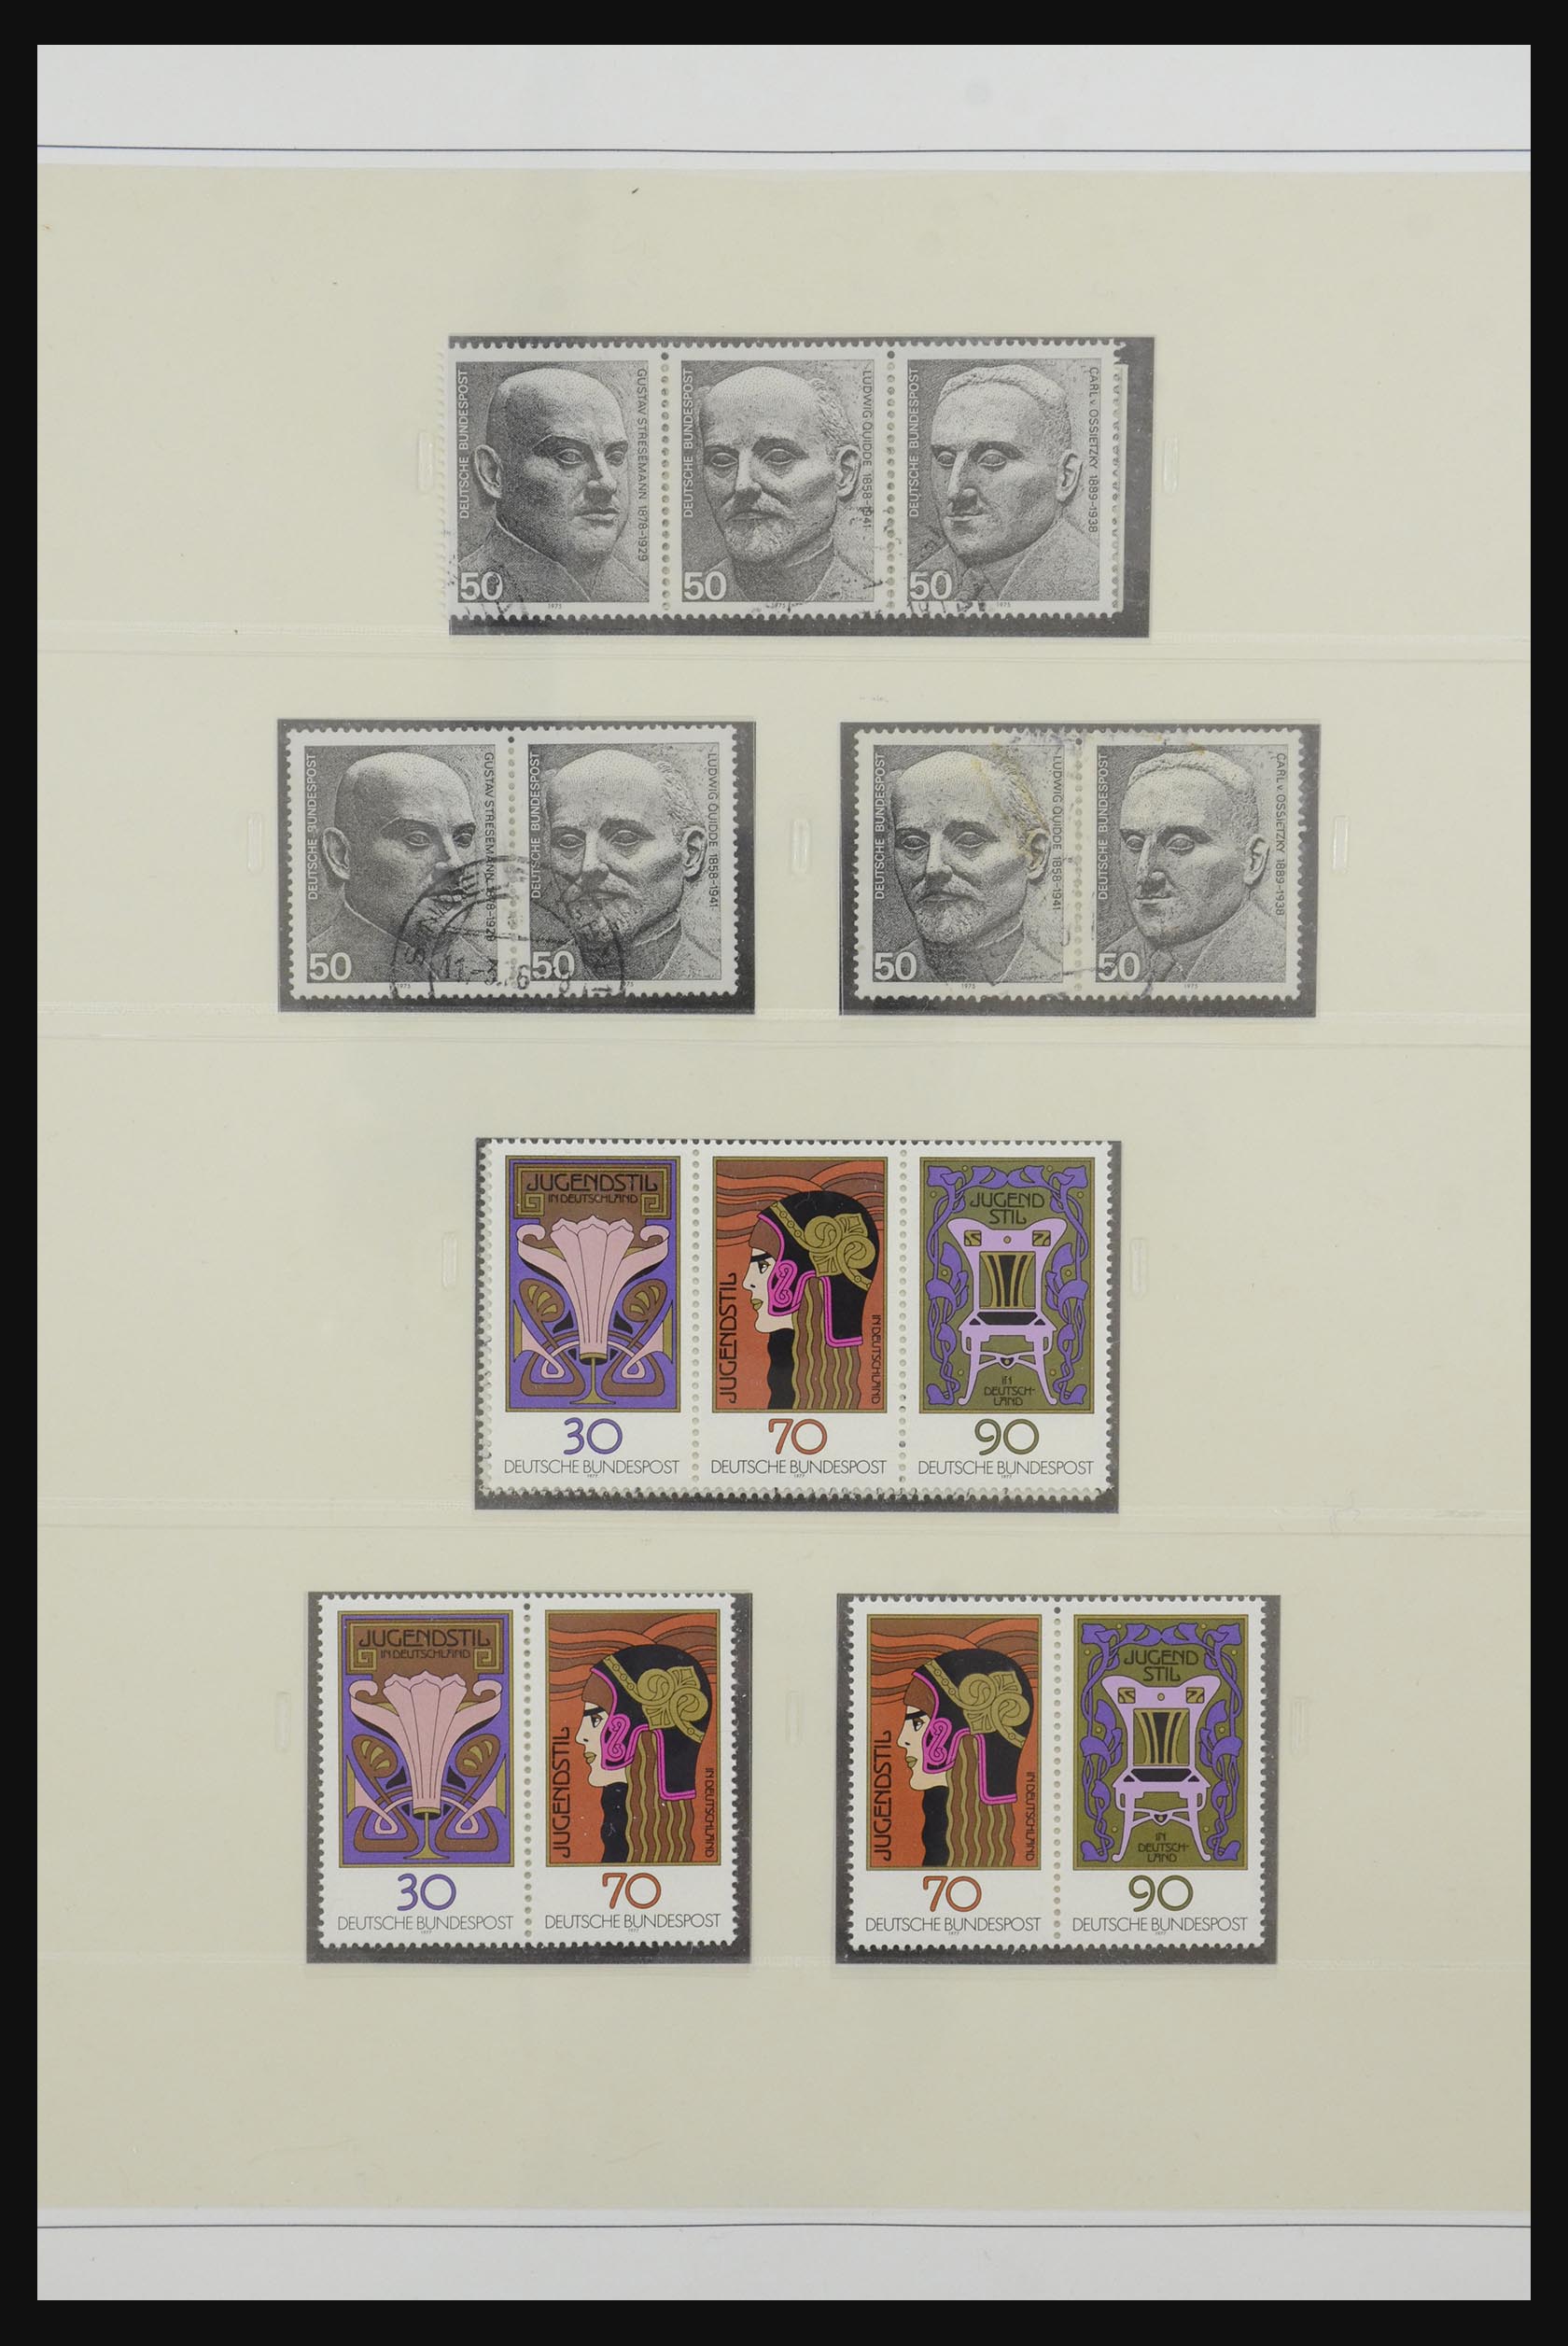 31842 054 - 31842 Bundespost combinations 1951-2003.